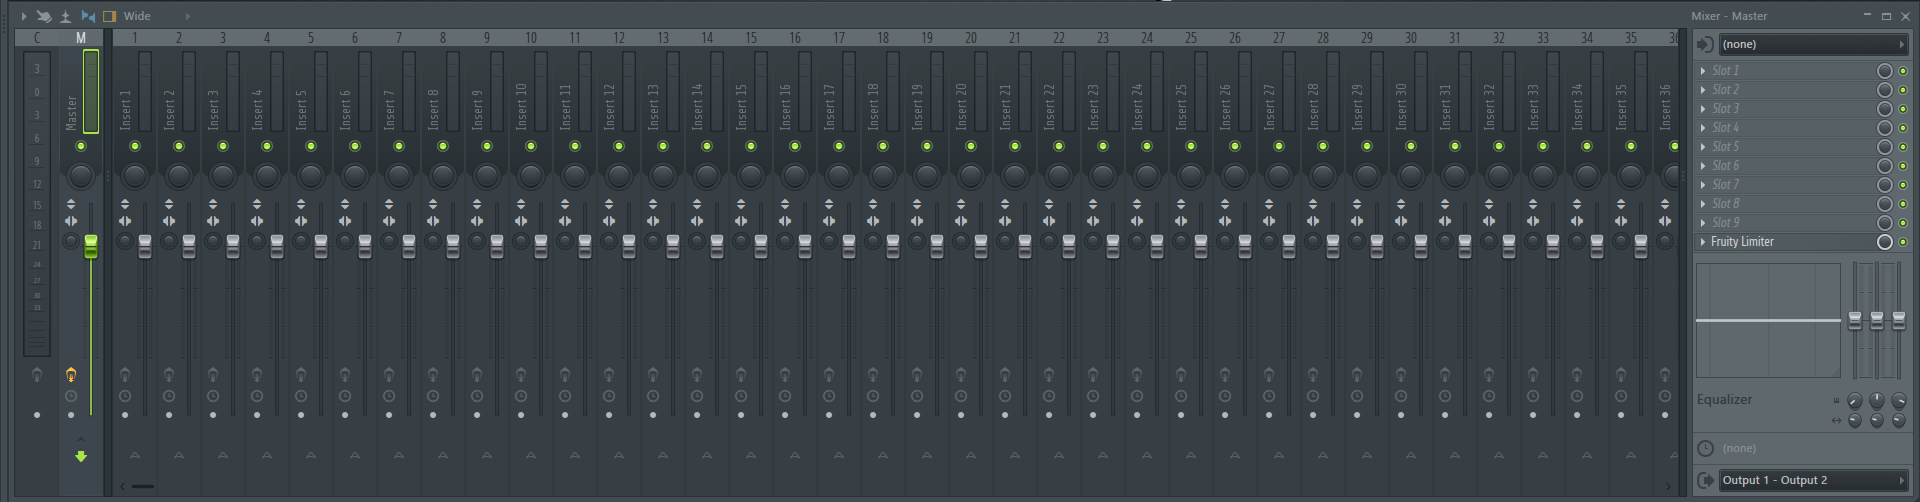 fl_studio_mixer